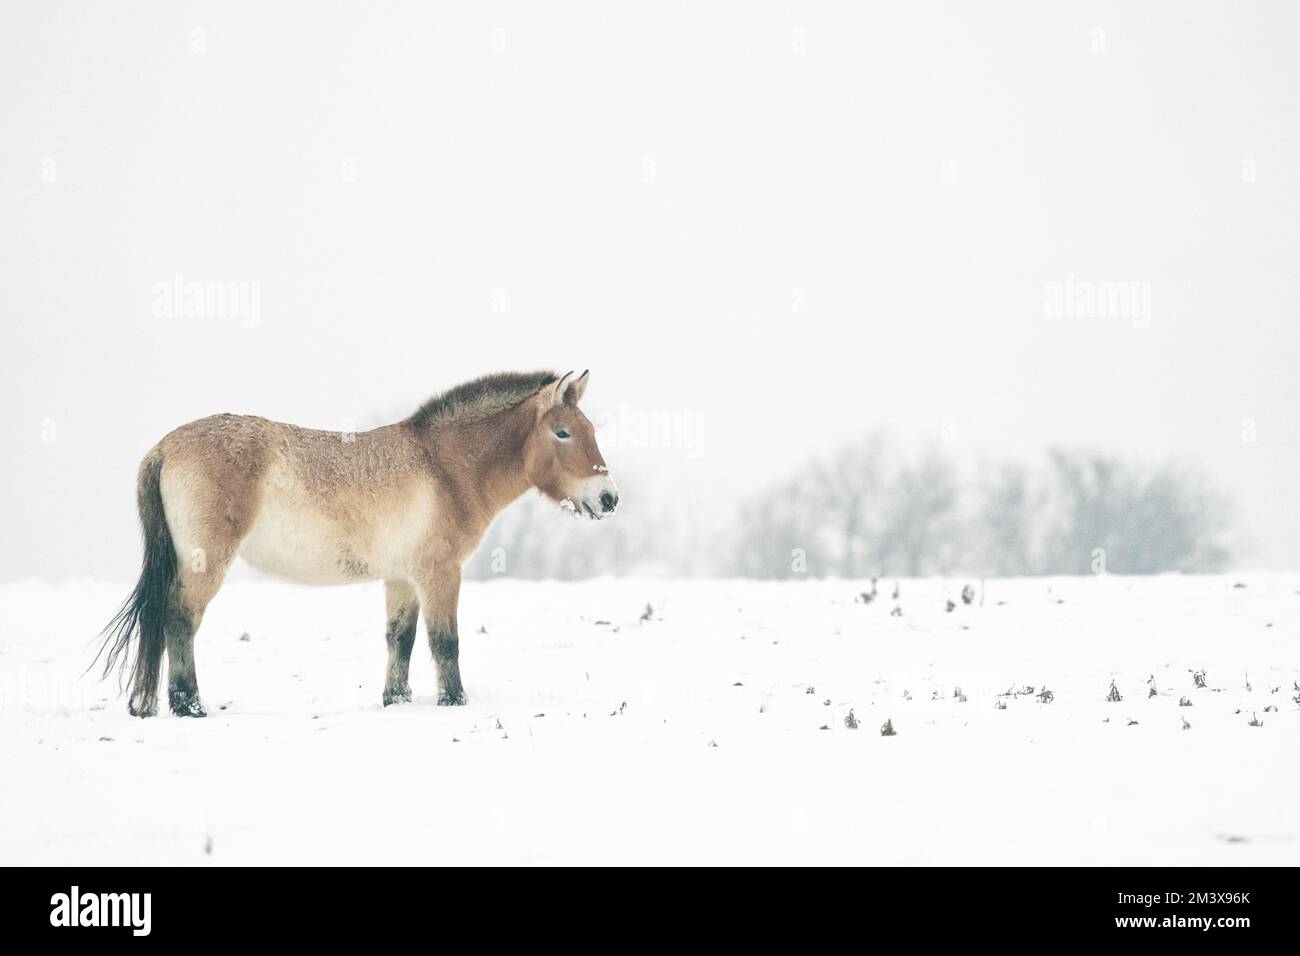 Cavallo di Przewalski in inverno con neve nel paesaggio con alberi sullo sfondo. Cavallo selvaggio mongolo in habitat naturale. Foto Stock